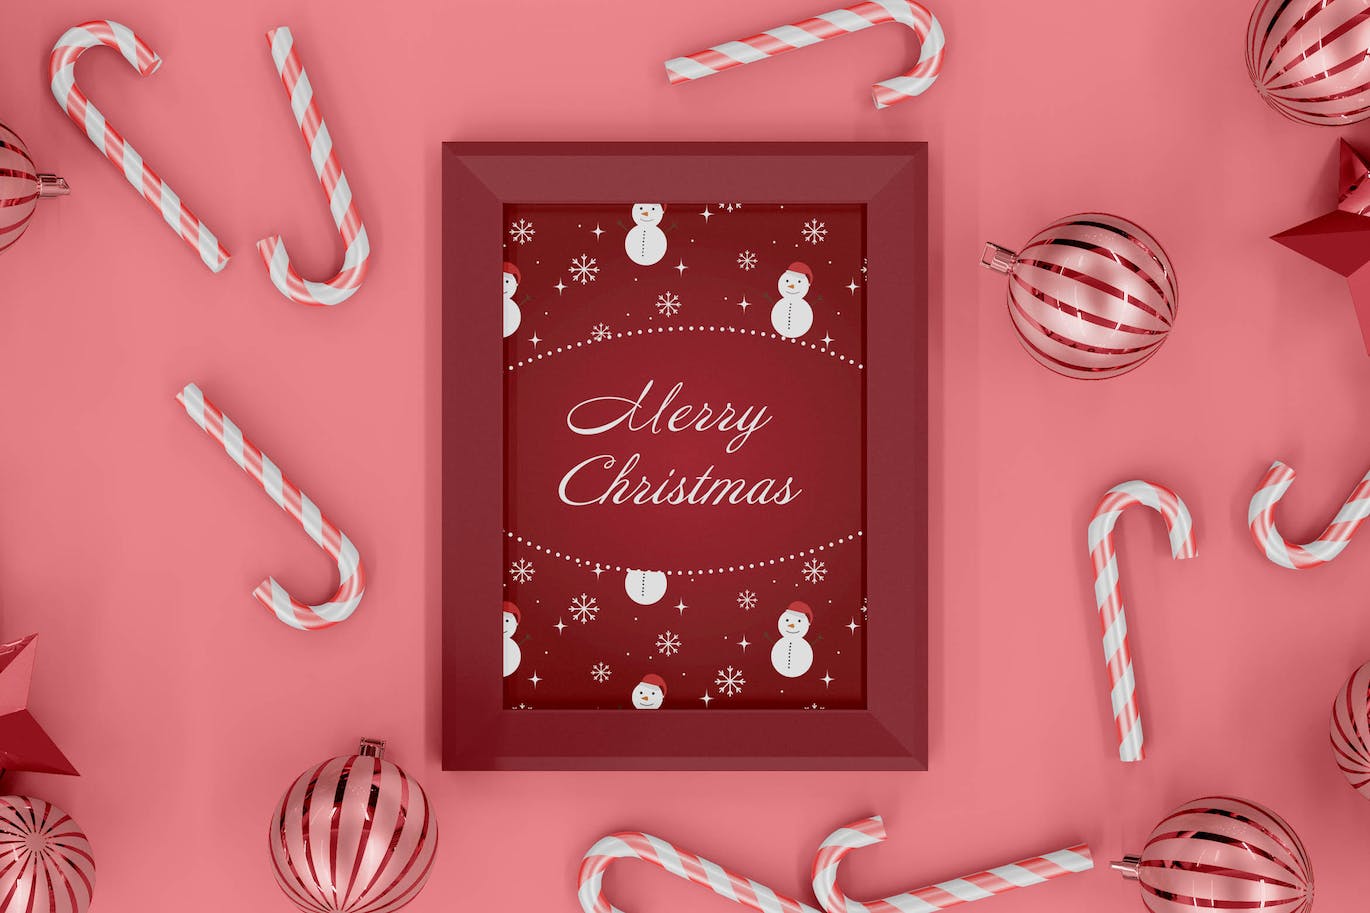 粉色圣诞装饰画框相框样机模板 (PSD)